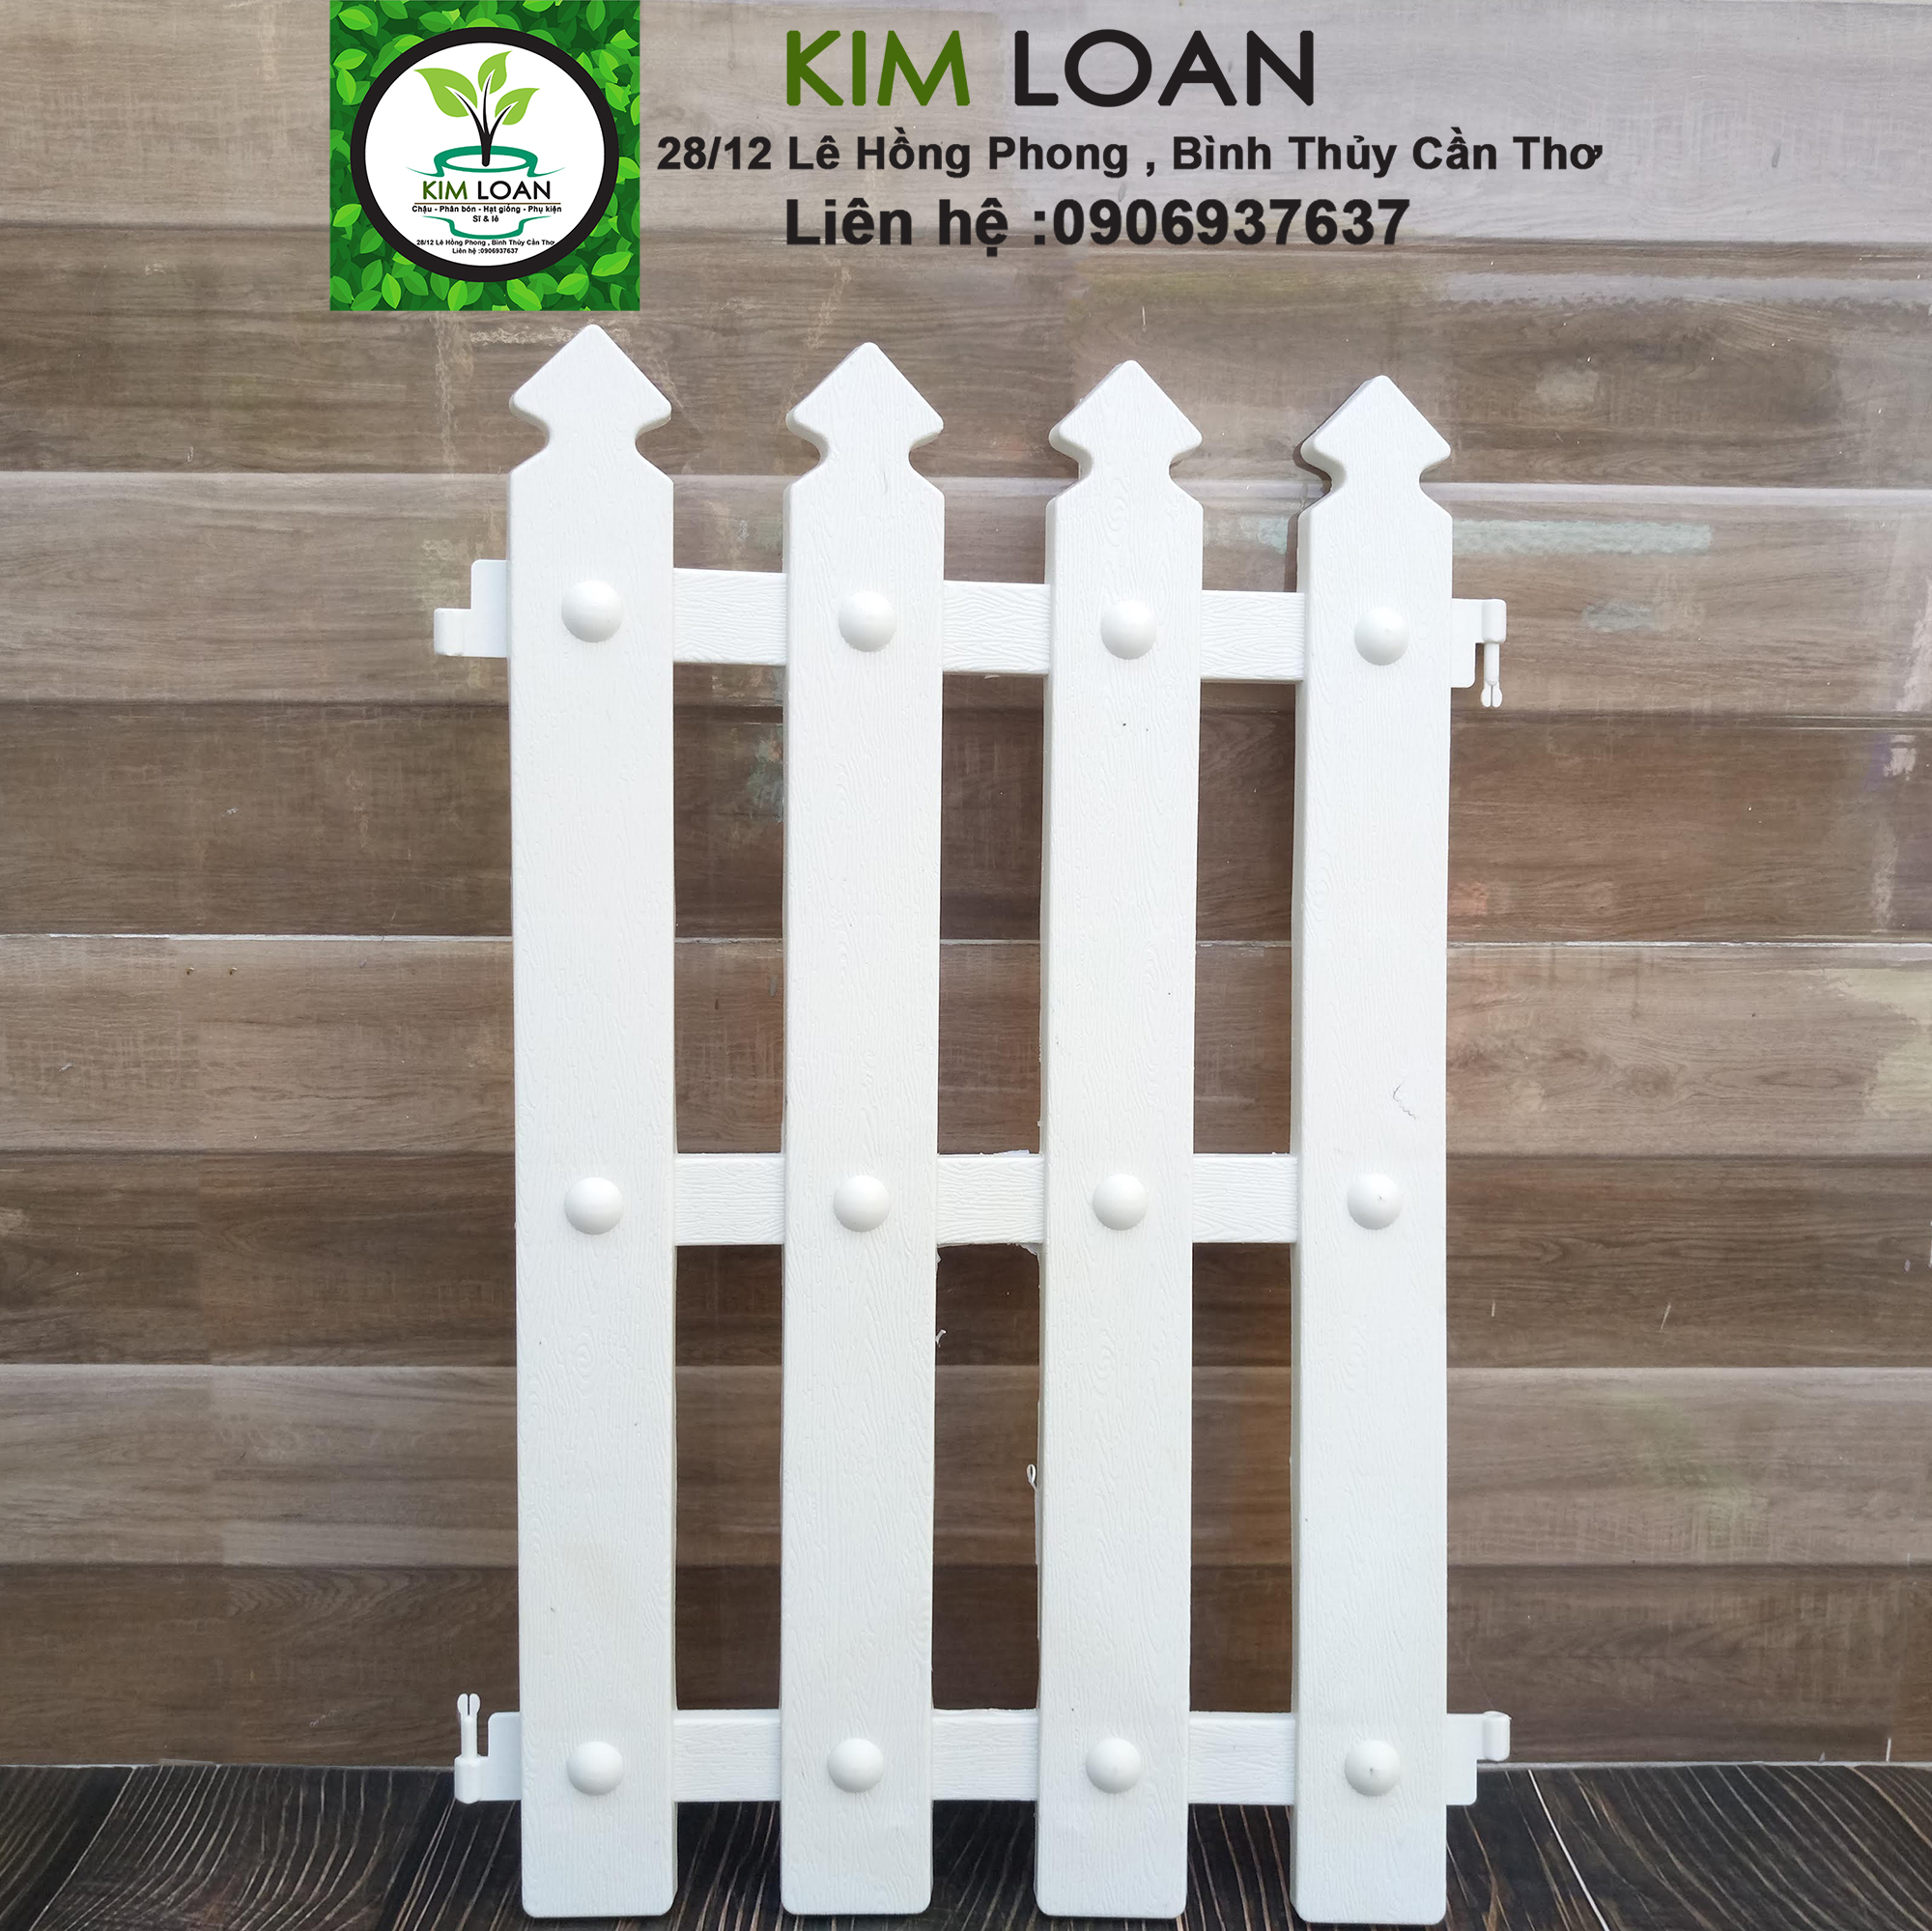 Hàng rào gỗ trang trí: Hàng rào gỗ trang trí là một trong những lựa chọn tuyệt vời để trang trí cho ngôi nhà của bạn thêm phần sang trọng và ấm cúng. Hình ảnh về hàng rào gỗ trang trí sẽ khiến bạn hài lòng với sự độc đáo của chúng.